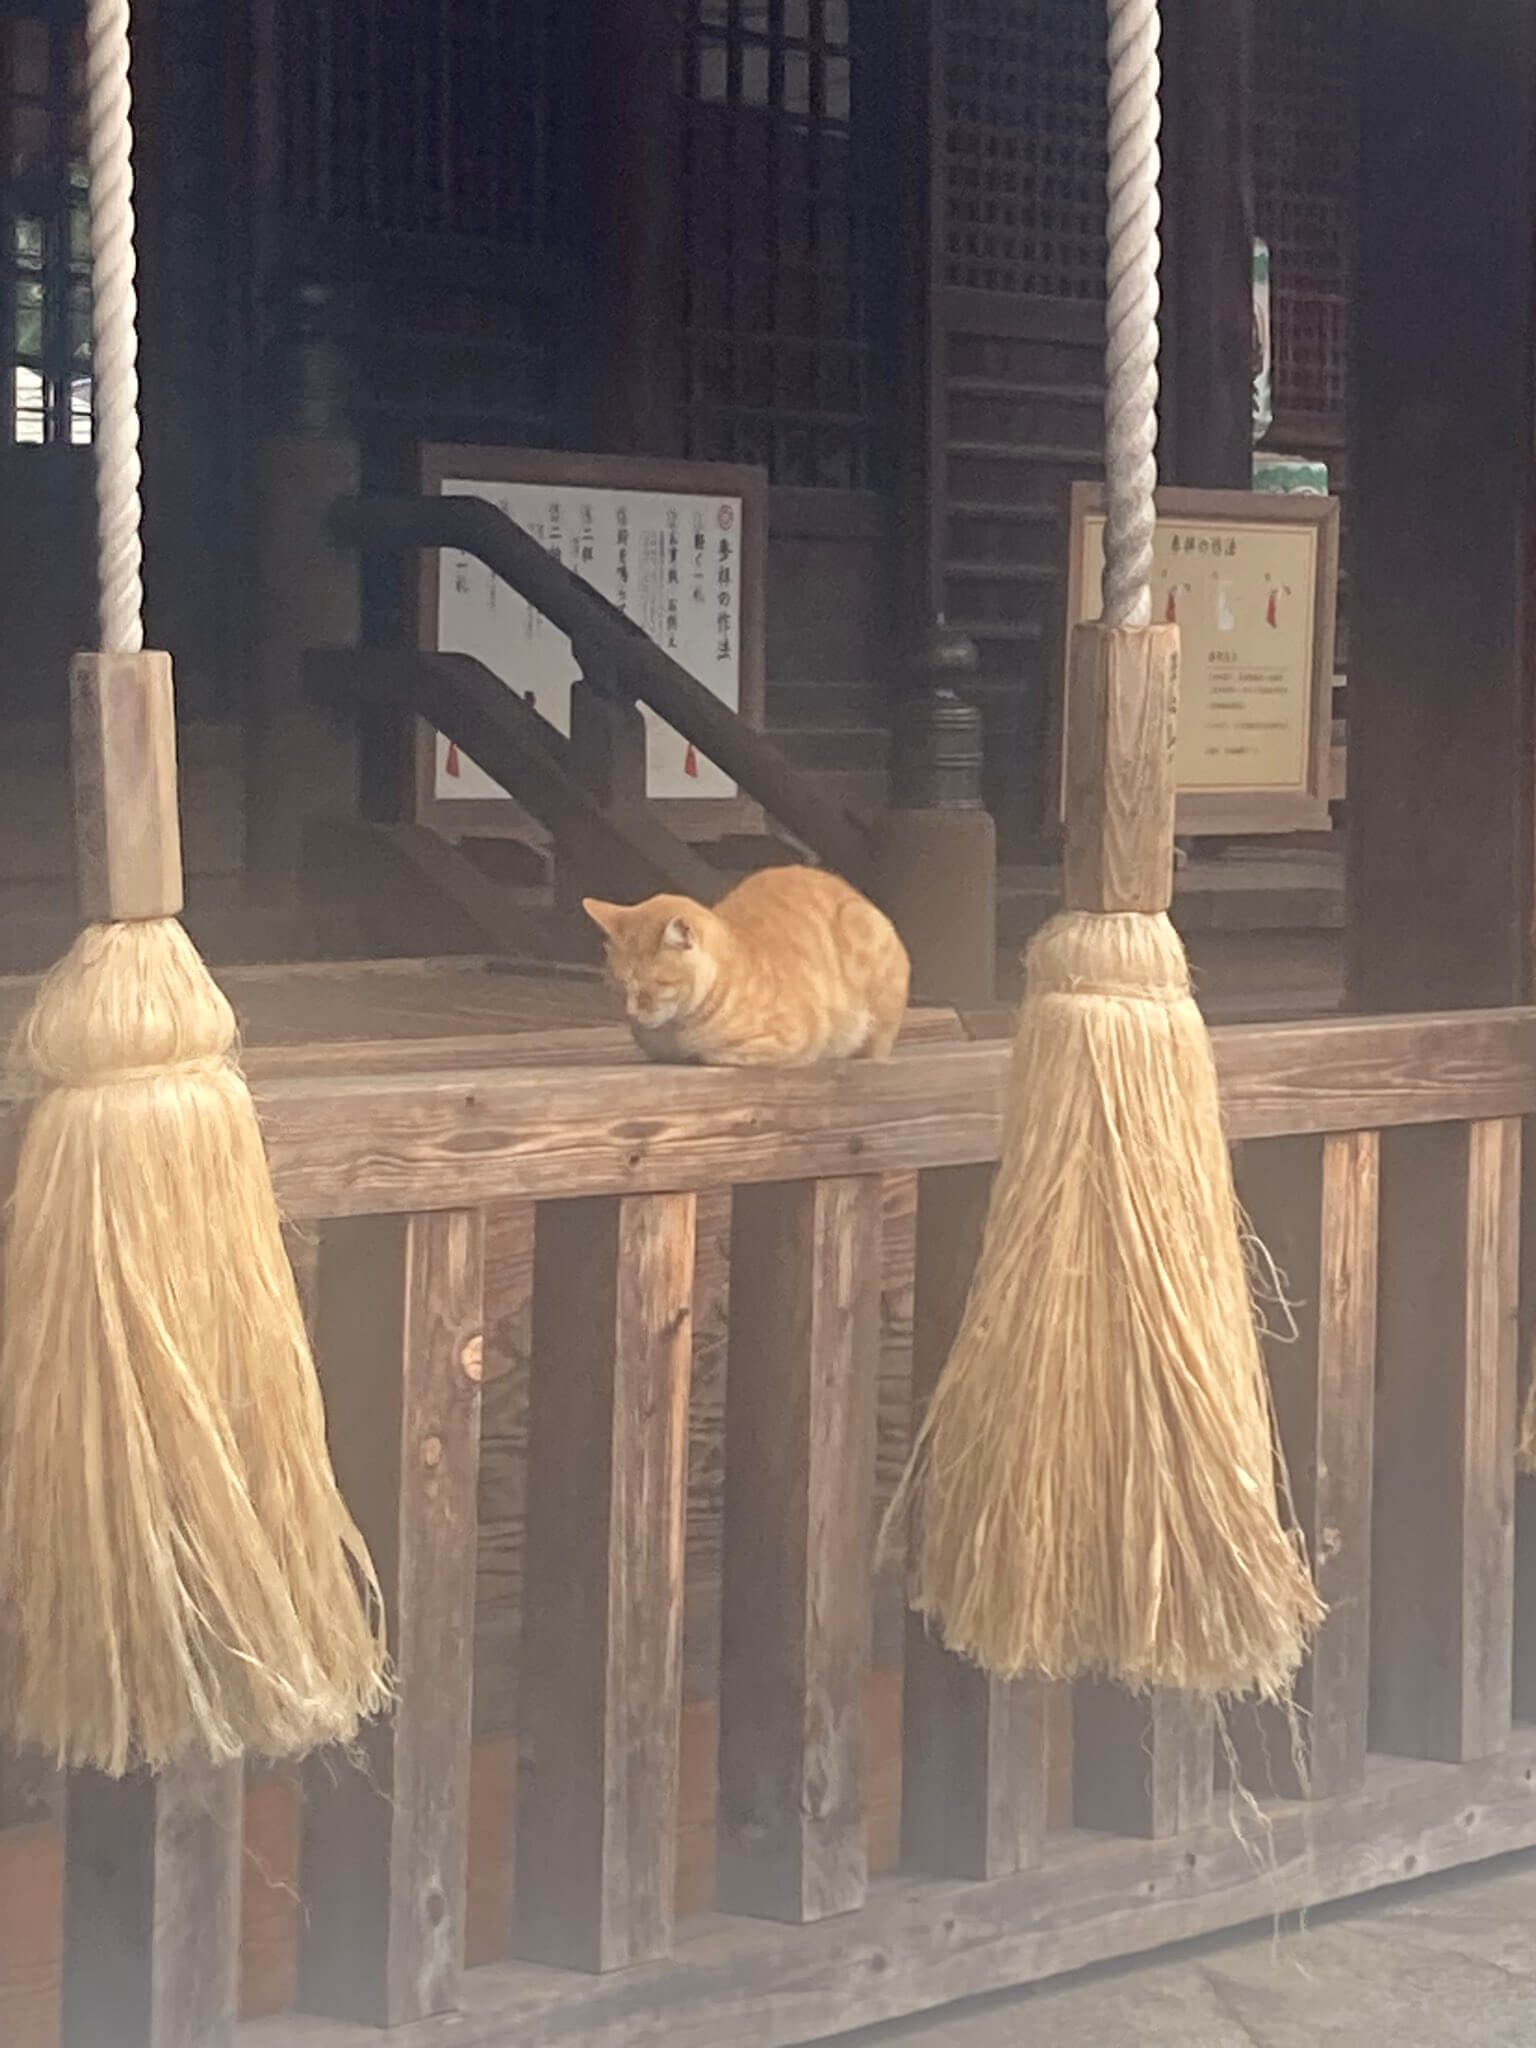 お賽銭箱の前で眠る猫 in 小倉城内にある八坂神社